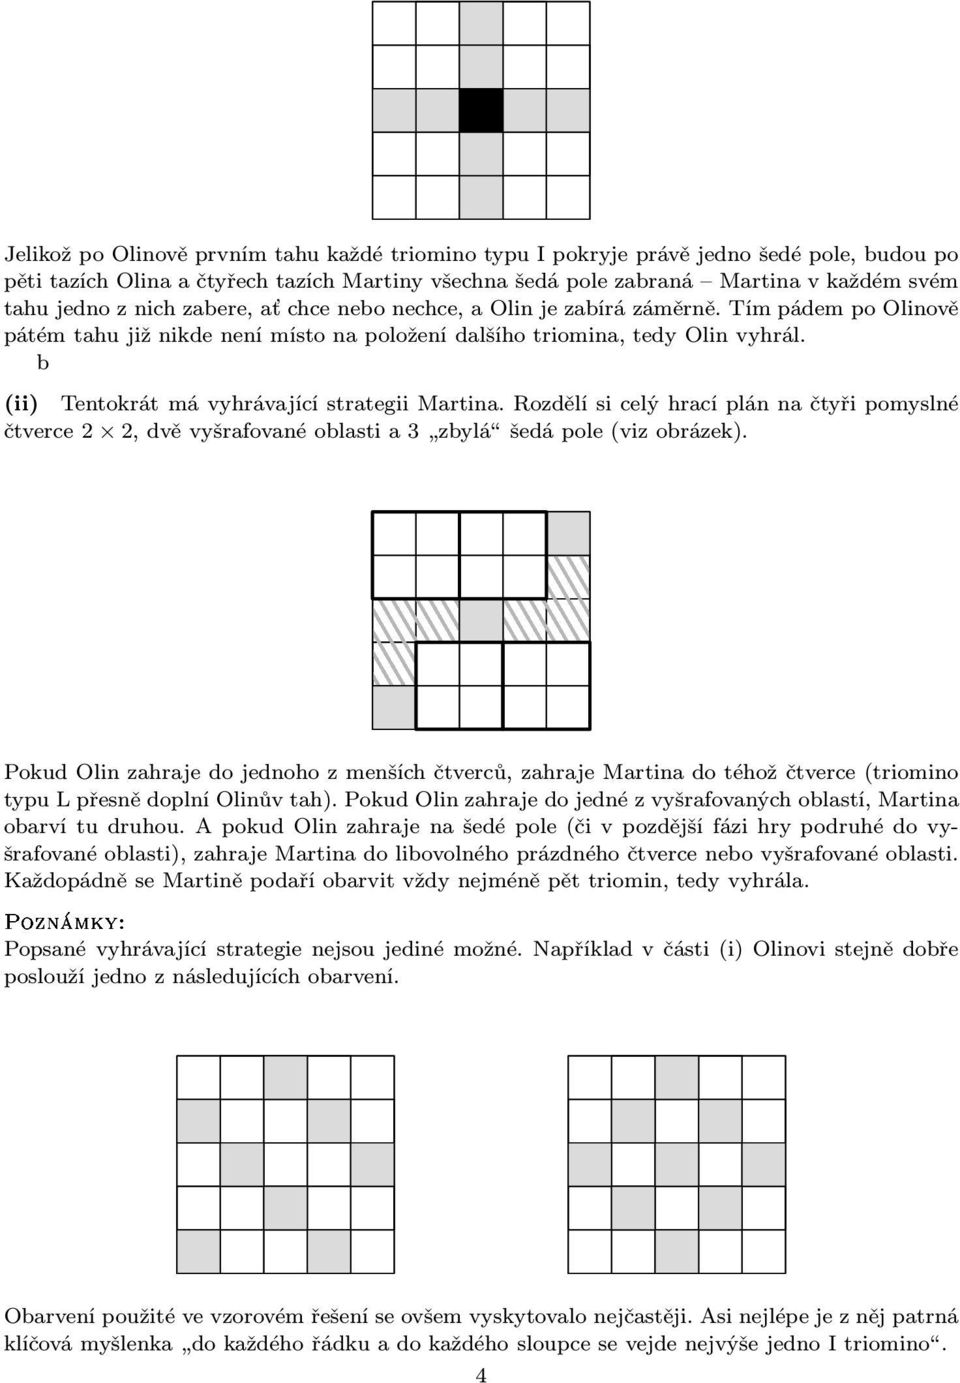 b (ii) Tentokrát má vyhrávající strategii Martina. Rozdělí si celý hrací plán na čtyři pomyslné čtverce2 2,dvěvyšrafovanéoblastia3 zbylá šedápole(vizobrázek).